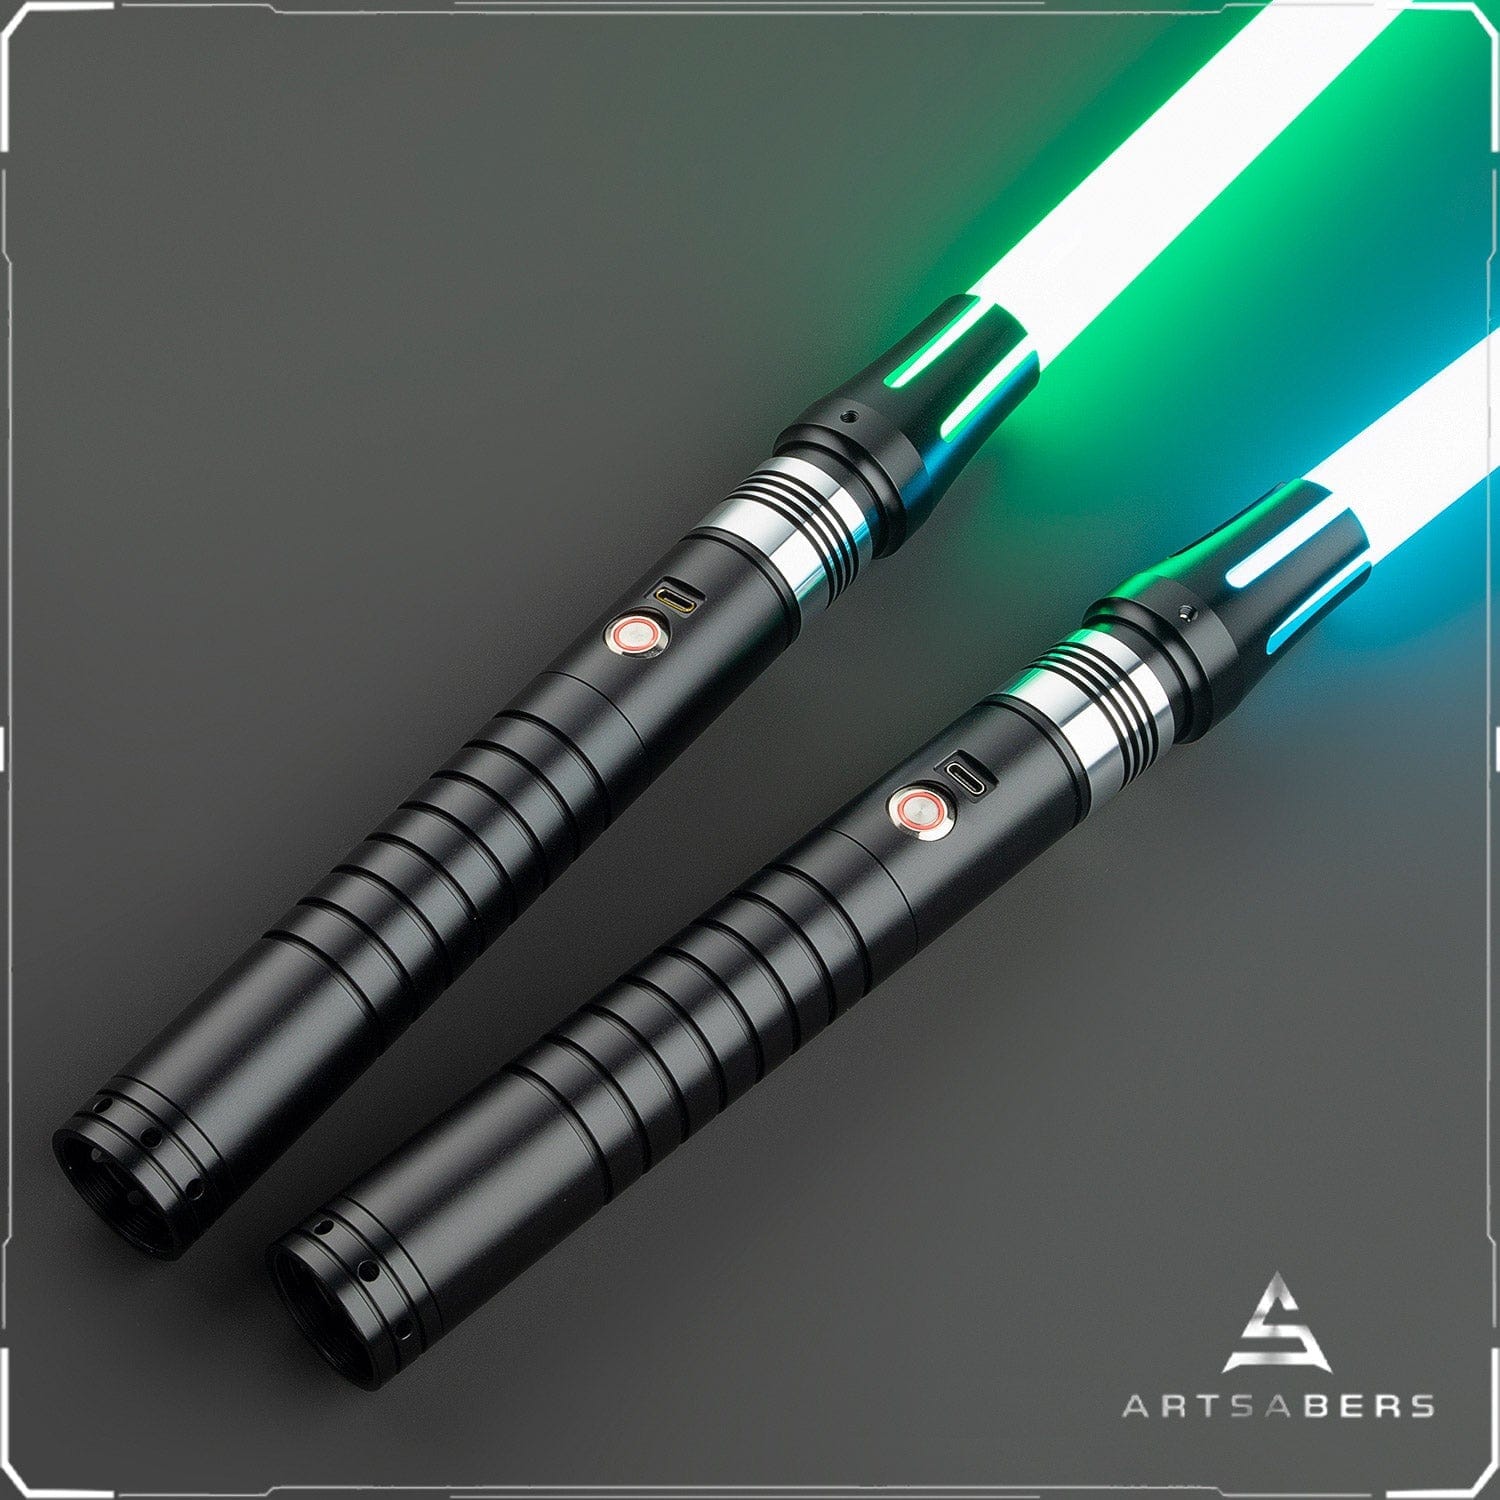 Moldex Double Bladed saber Star Wars saber ARTSABERS